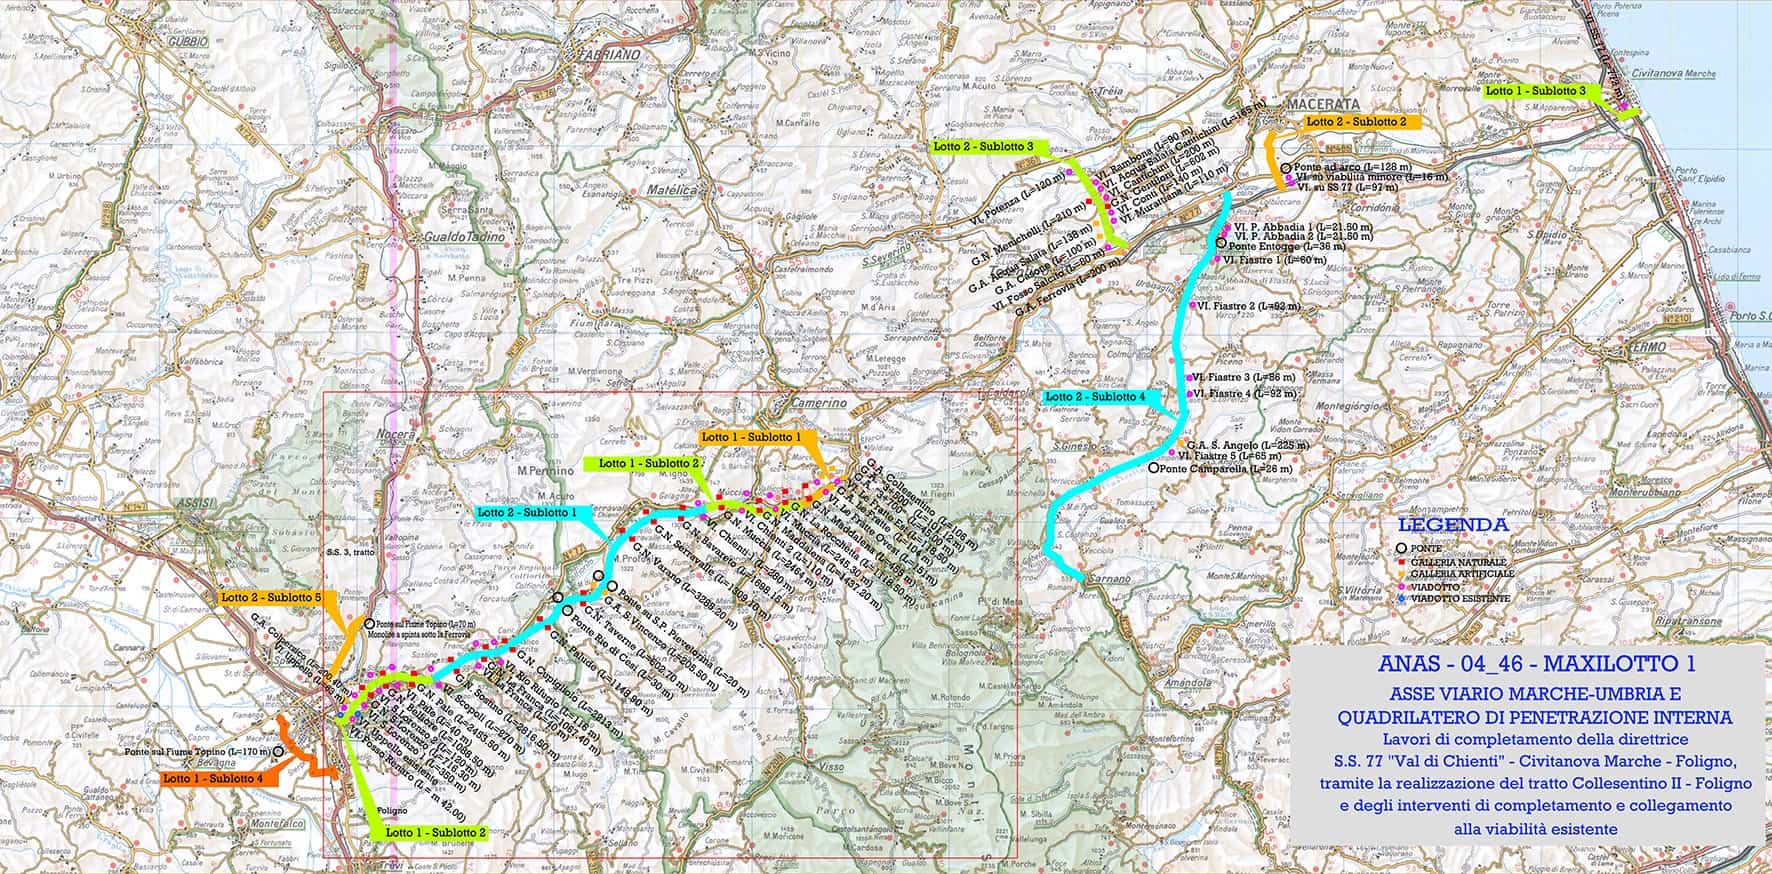 Sull’asse viario Marche-Umbria e Quadrilatero di penetrazione interna, i due sublotti 1.2 e 2.1 coprono il tratto Foligno-Pontelatrave della S.S. 77 “Val di Chienti”